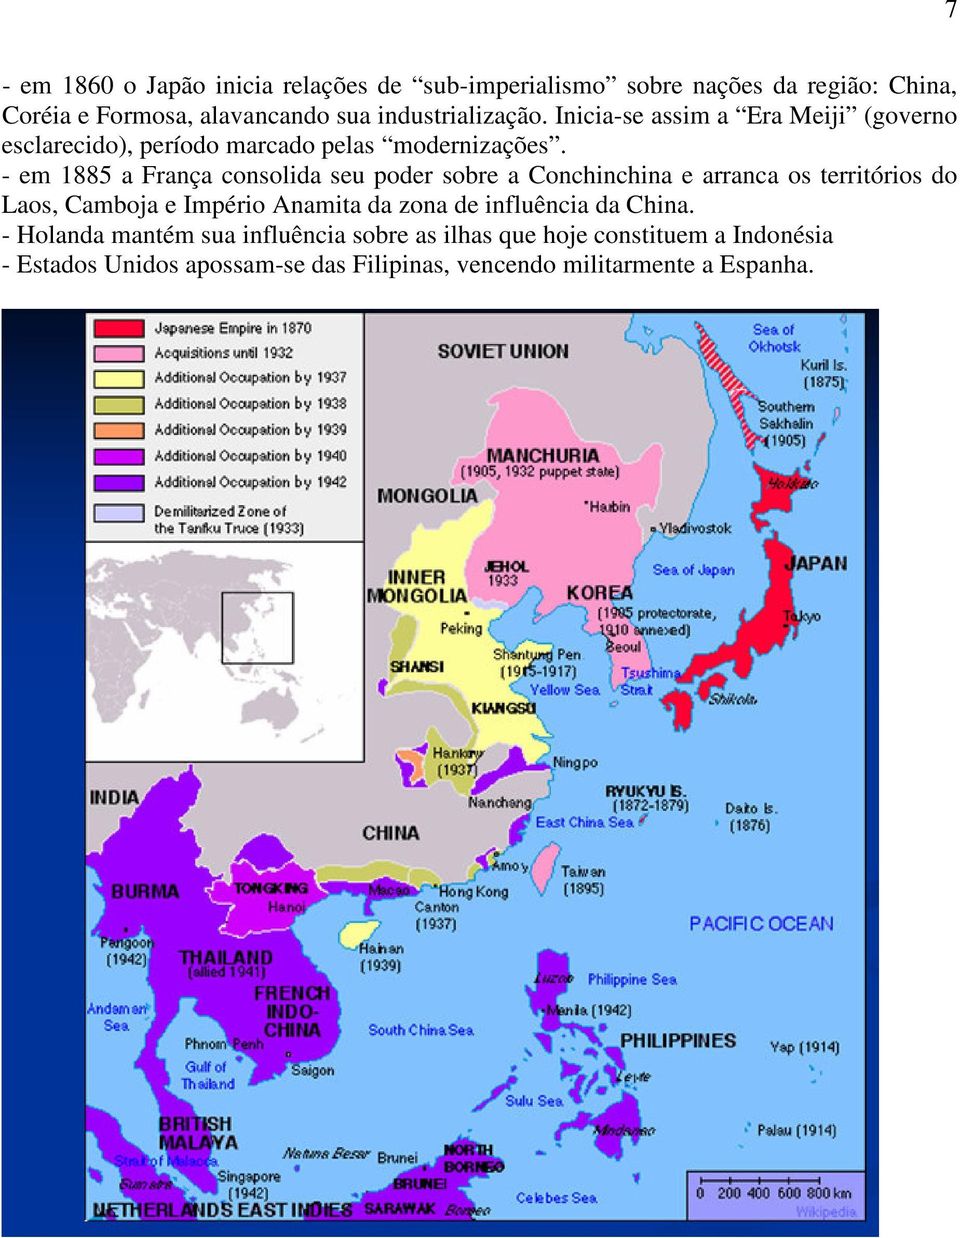 - em 1885 a França consolida seu poder sobre a Conchinchina e arranca os territórios do Laos, Camboja e Império Anamita da zona de